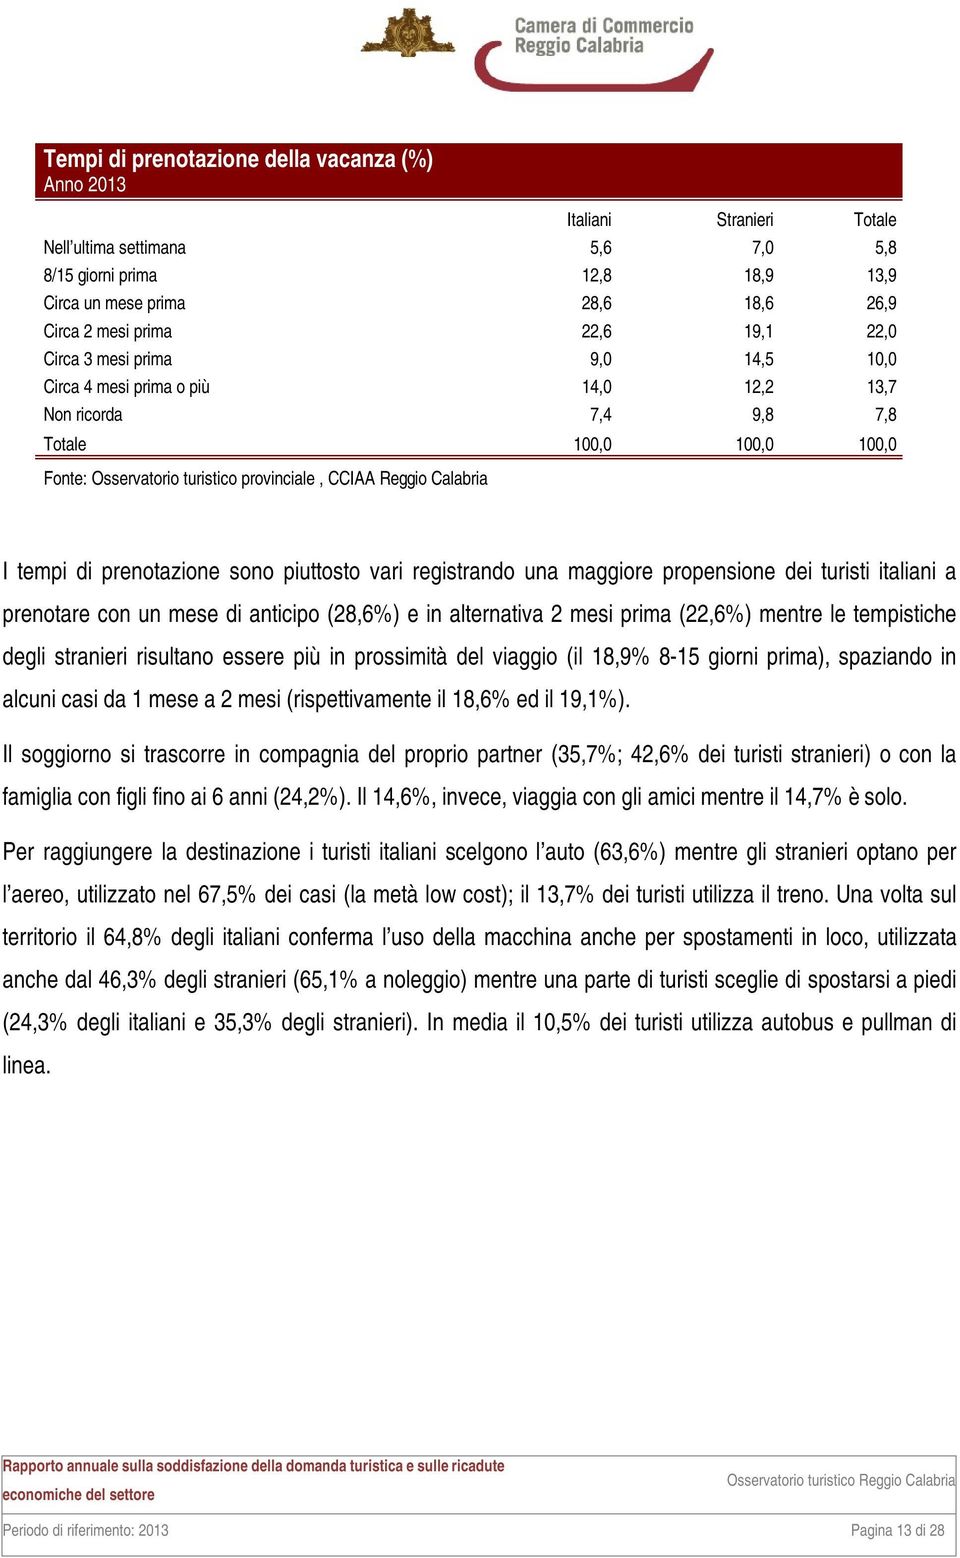 italiani a prenotare con un mese di anticipo (28,6%) e in alternativa 2 mesi prima (22,6%) mentre le tempistiche degli stranieri risultano essere più in prossimità del viaggio (il 18,9% 8-15 giorni